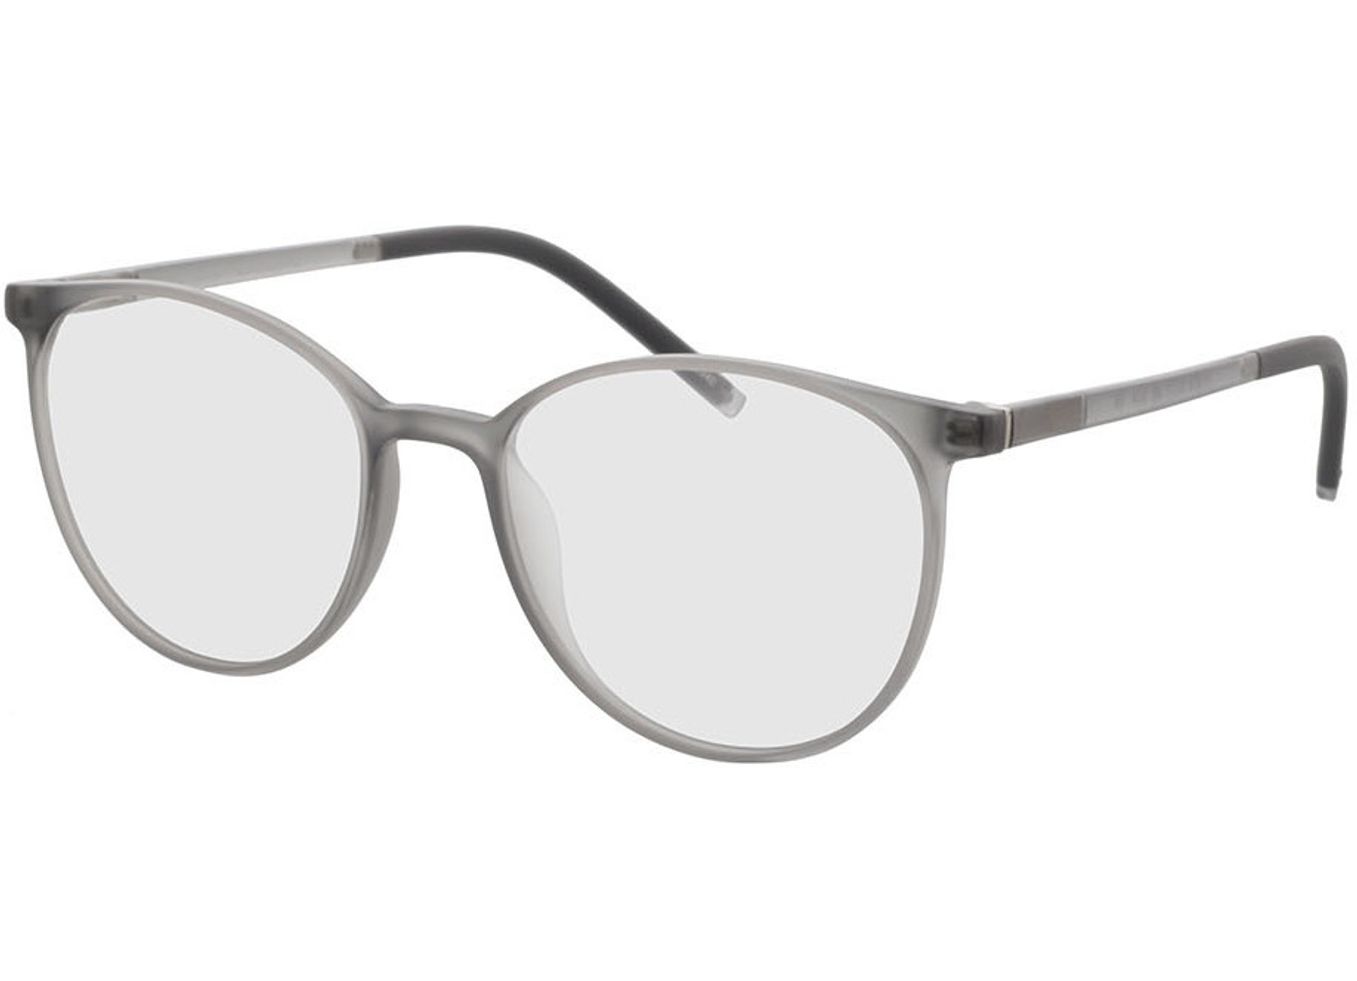 Conroe - grau transparent Gleitsichtbrille, Vollrand, Rund von Brille24 Collection